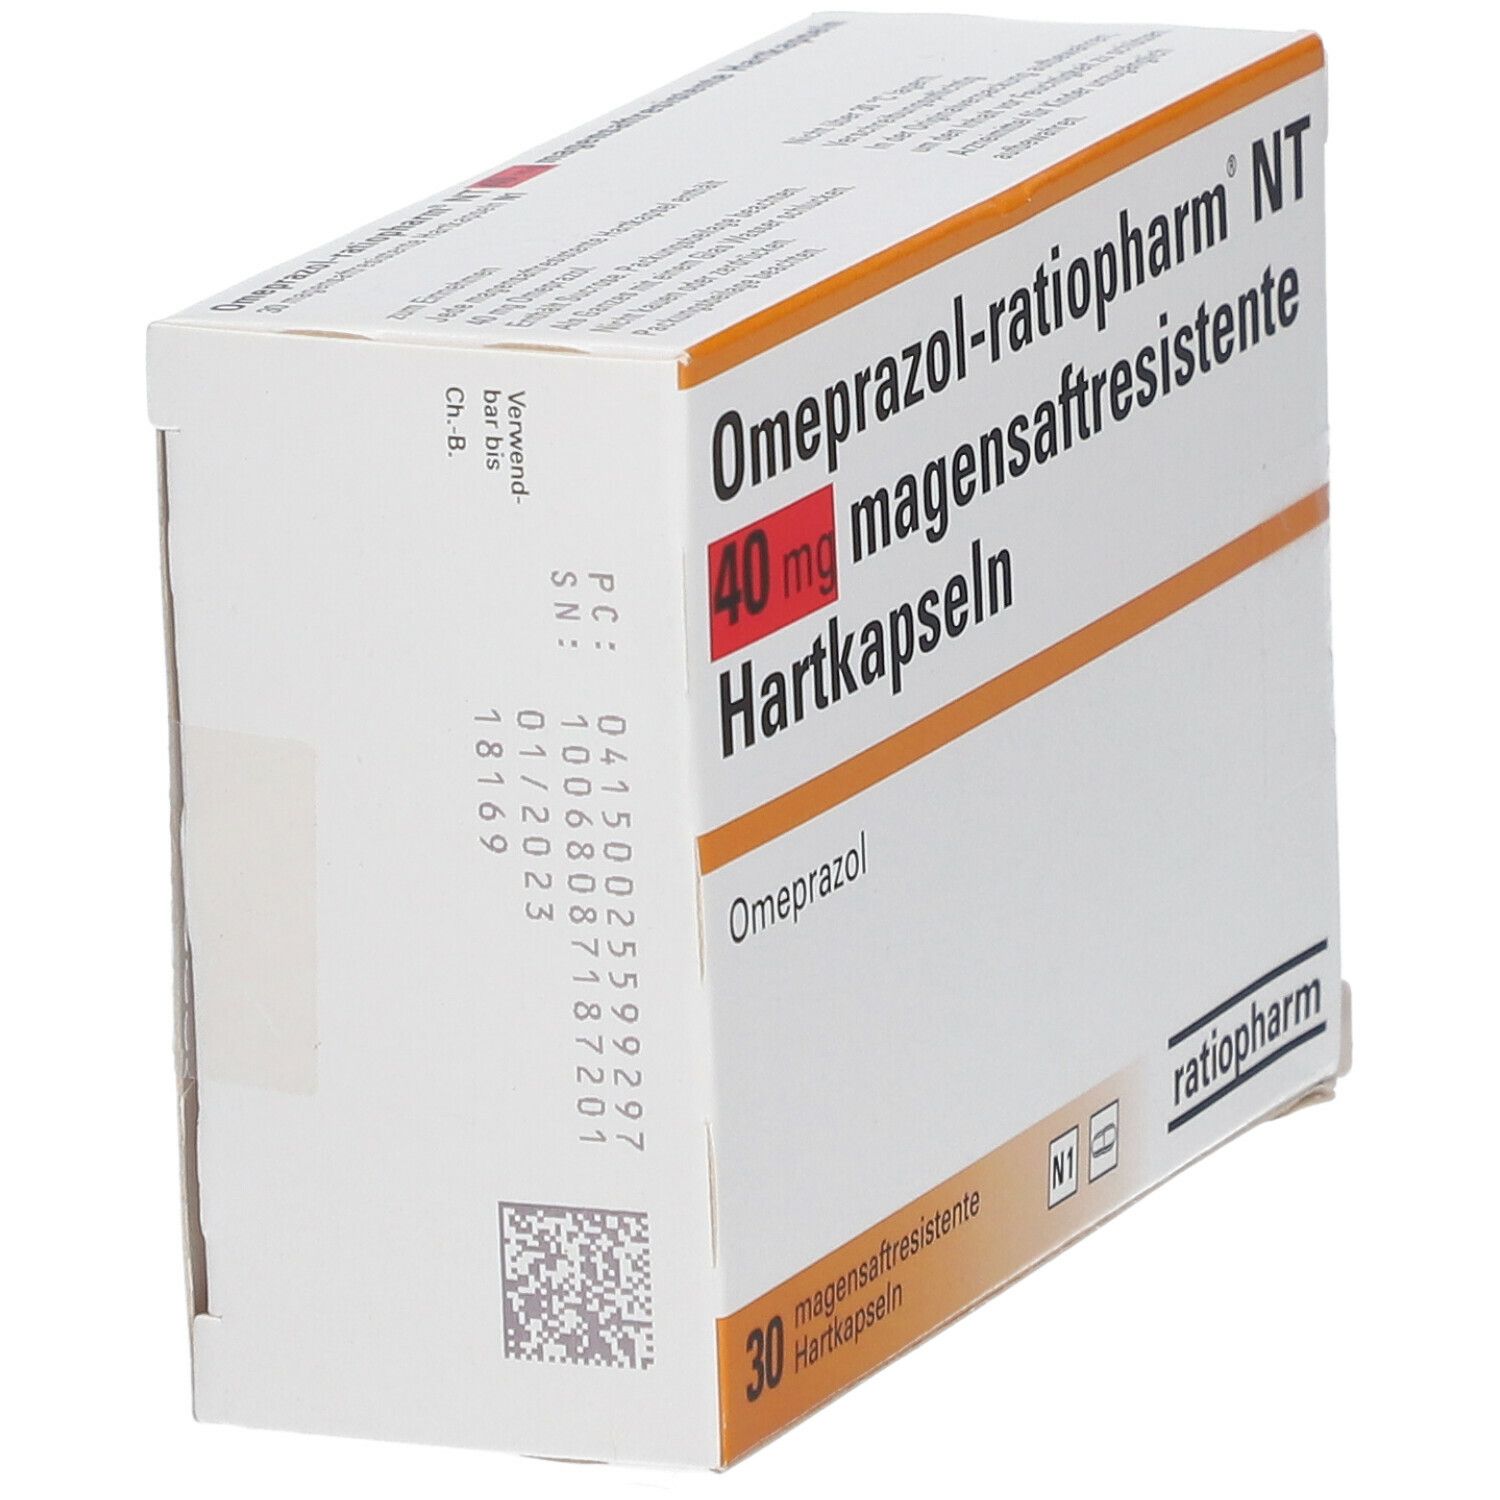 Omeprazol-ratiopharm® NT 40 mg